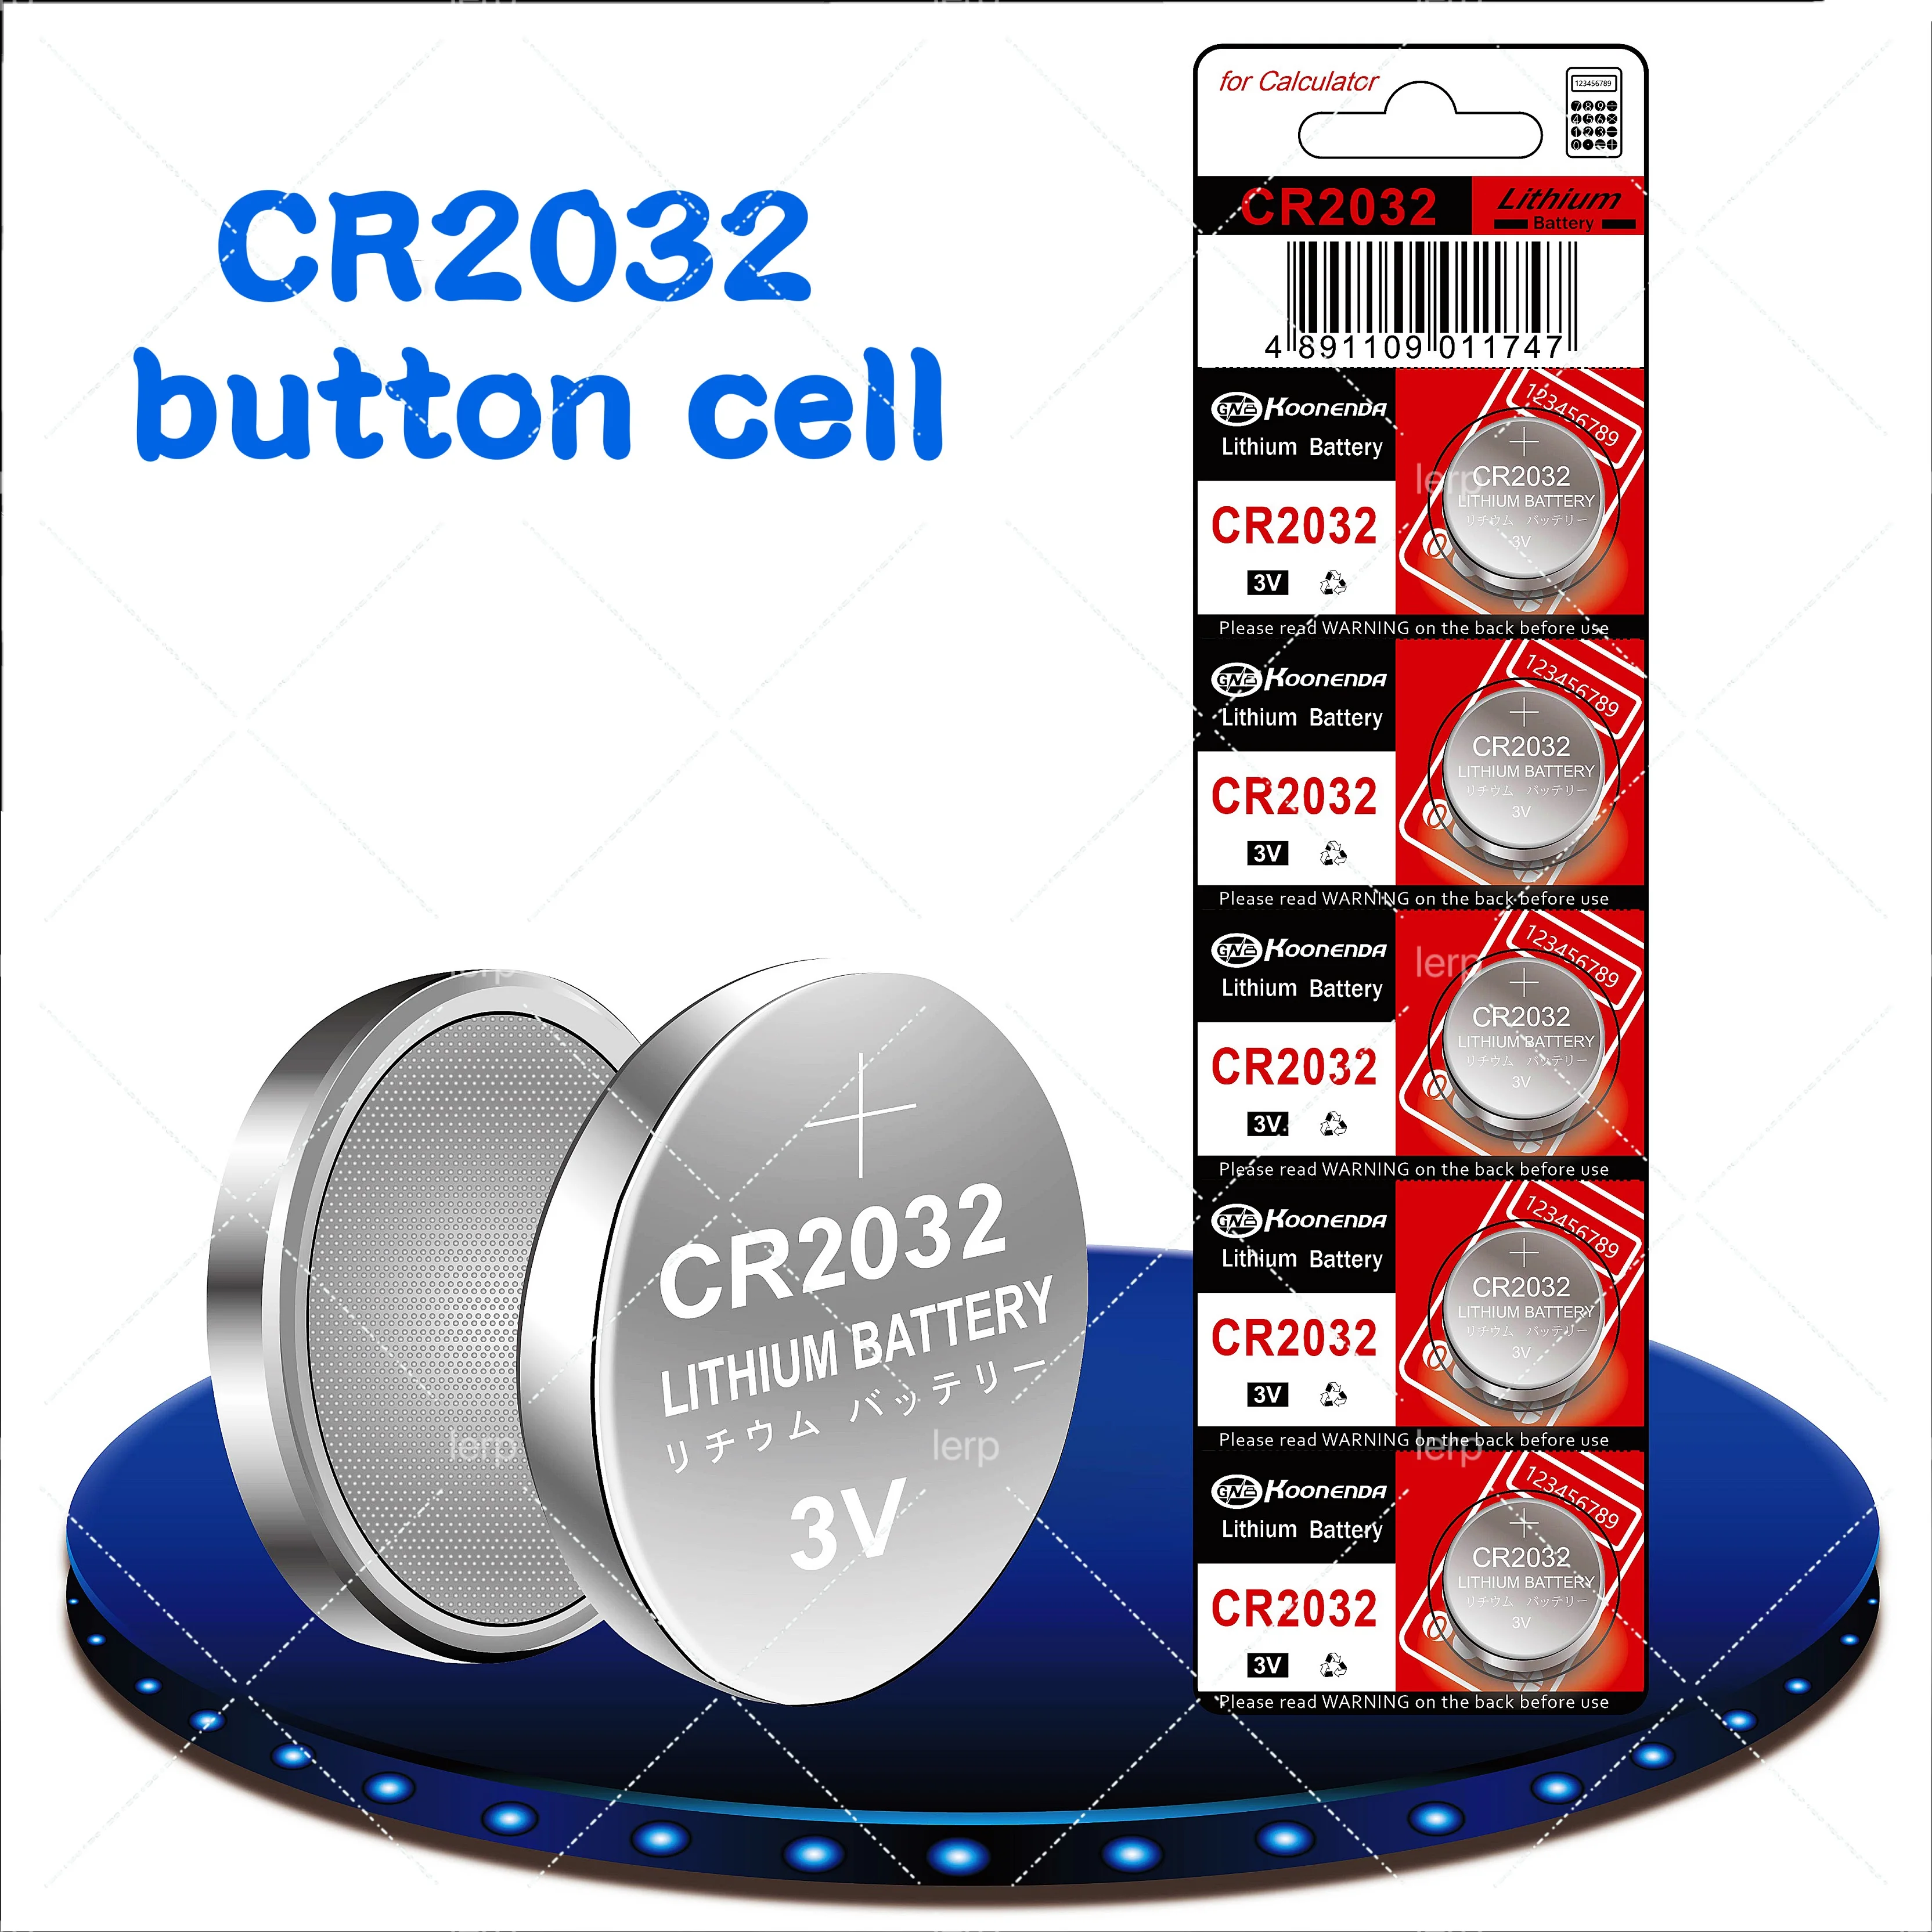 

CR2032 автомобильное противоугонное устройство на батарейках с дистанционным управлением, электронная монетница